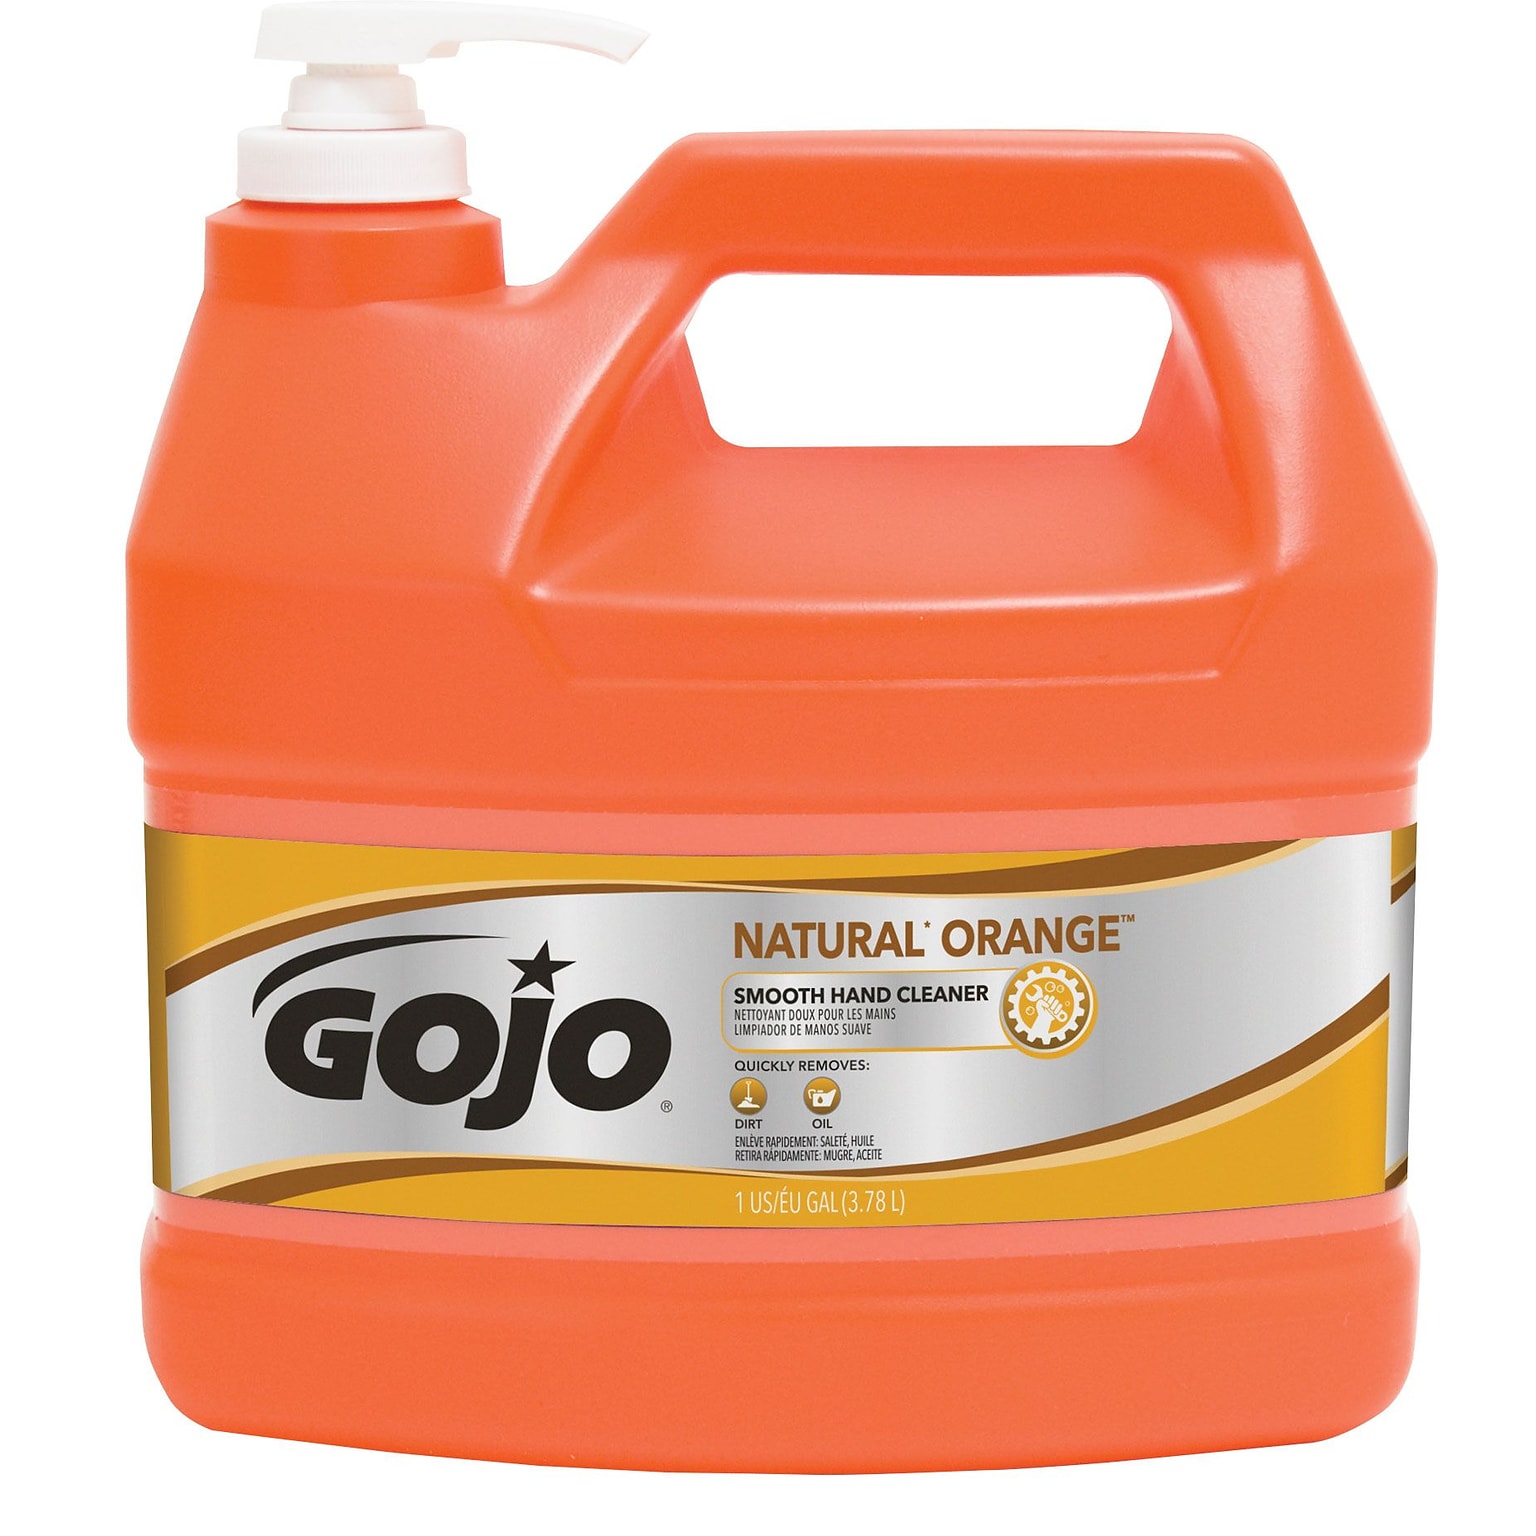 GOJO Liquid Hand Soap, Orange Citrus Scent, (0945-04)